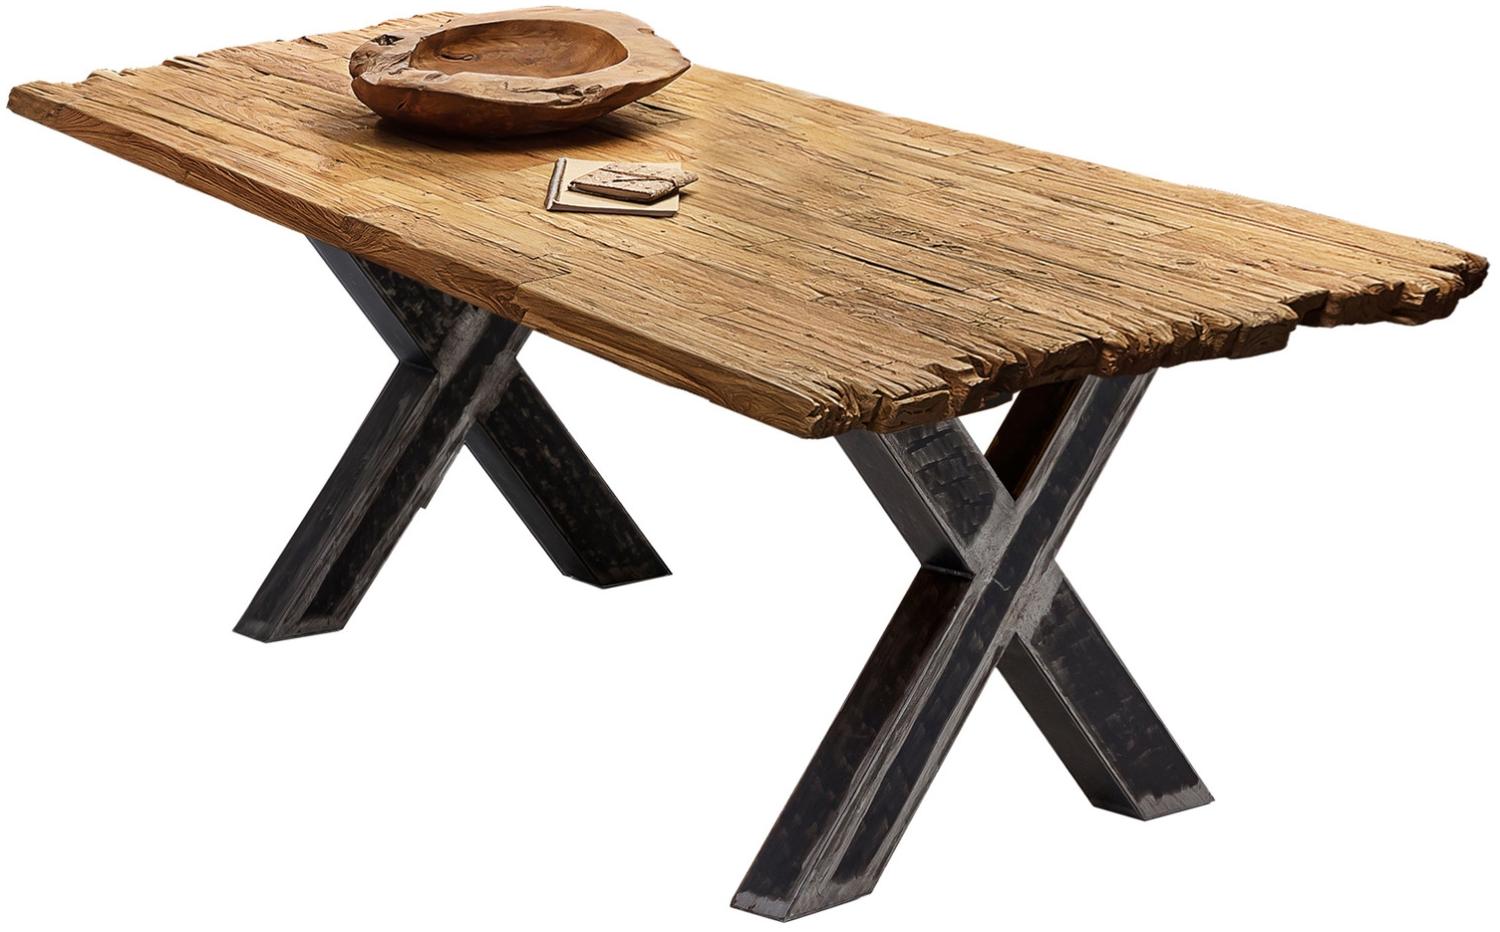 Sit Möbel Tische & Bänke Tisch 240x100 cm, Platte recyceltes Teak natur, Gestell Metall used look, klar lackiert Bild 1